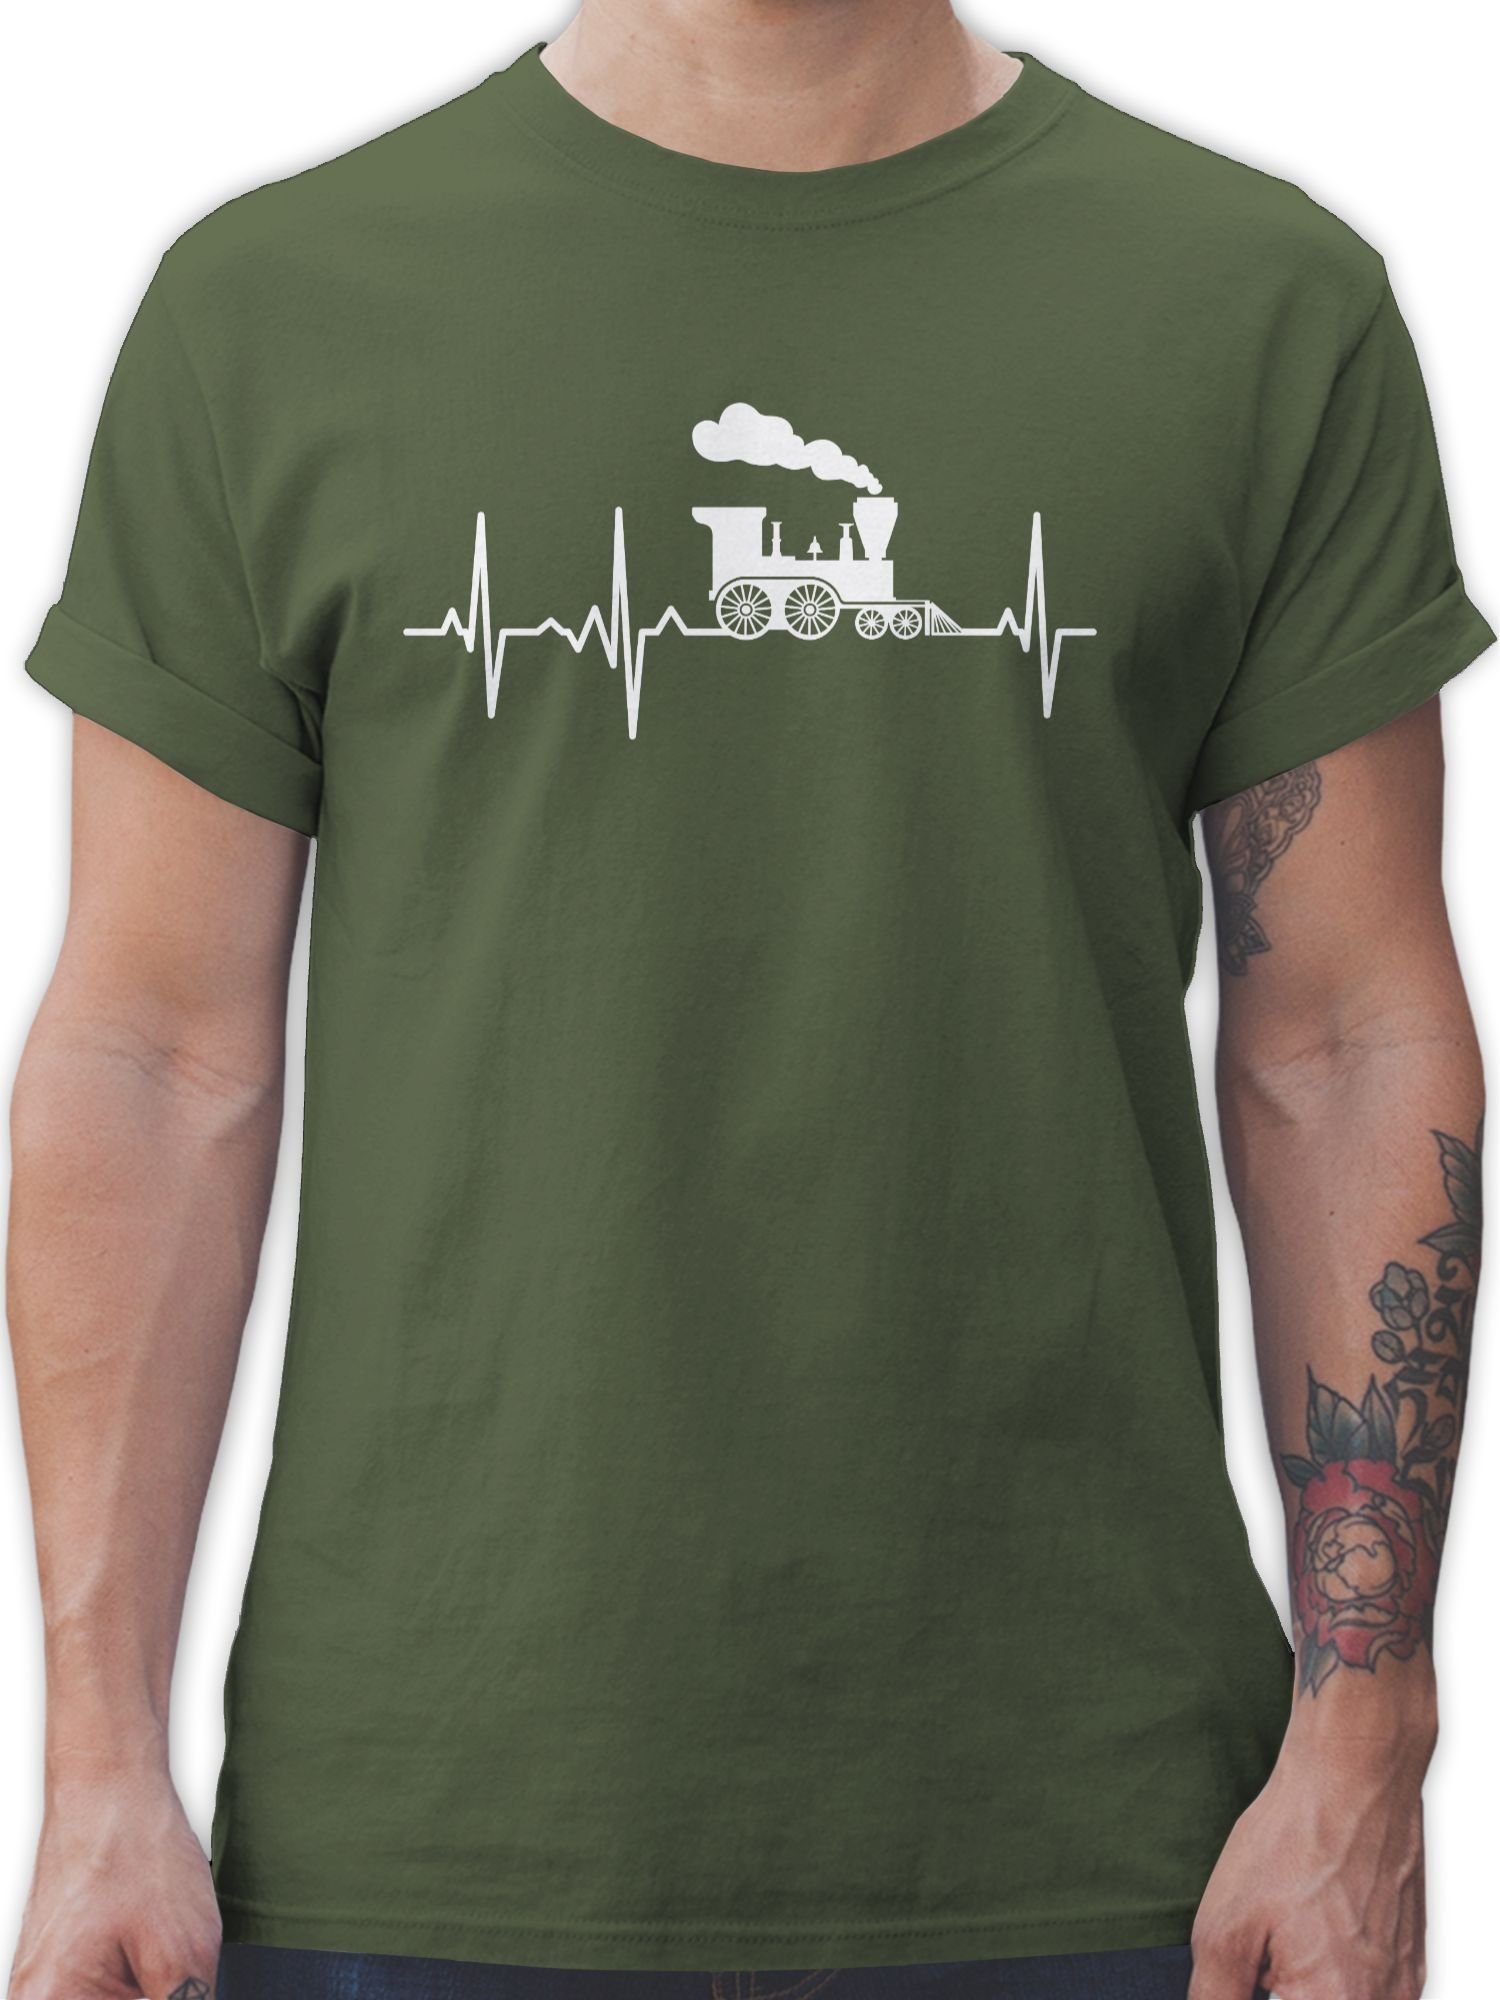 Shirtracer T-Shirt Dampflok Herzschlag weiß Hobby Outfit 02 Army Grün